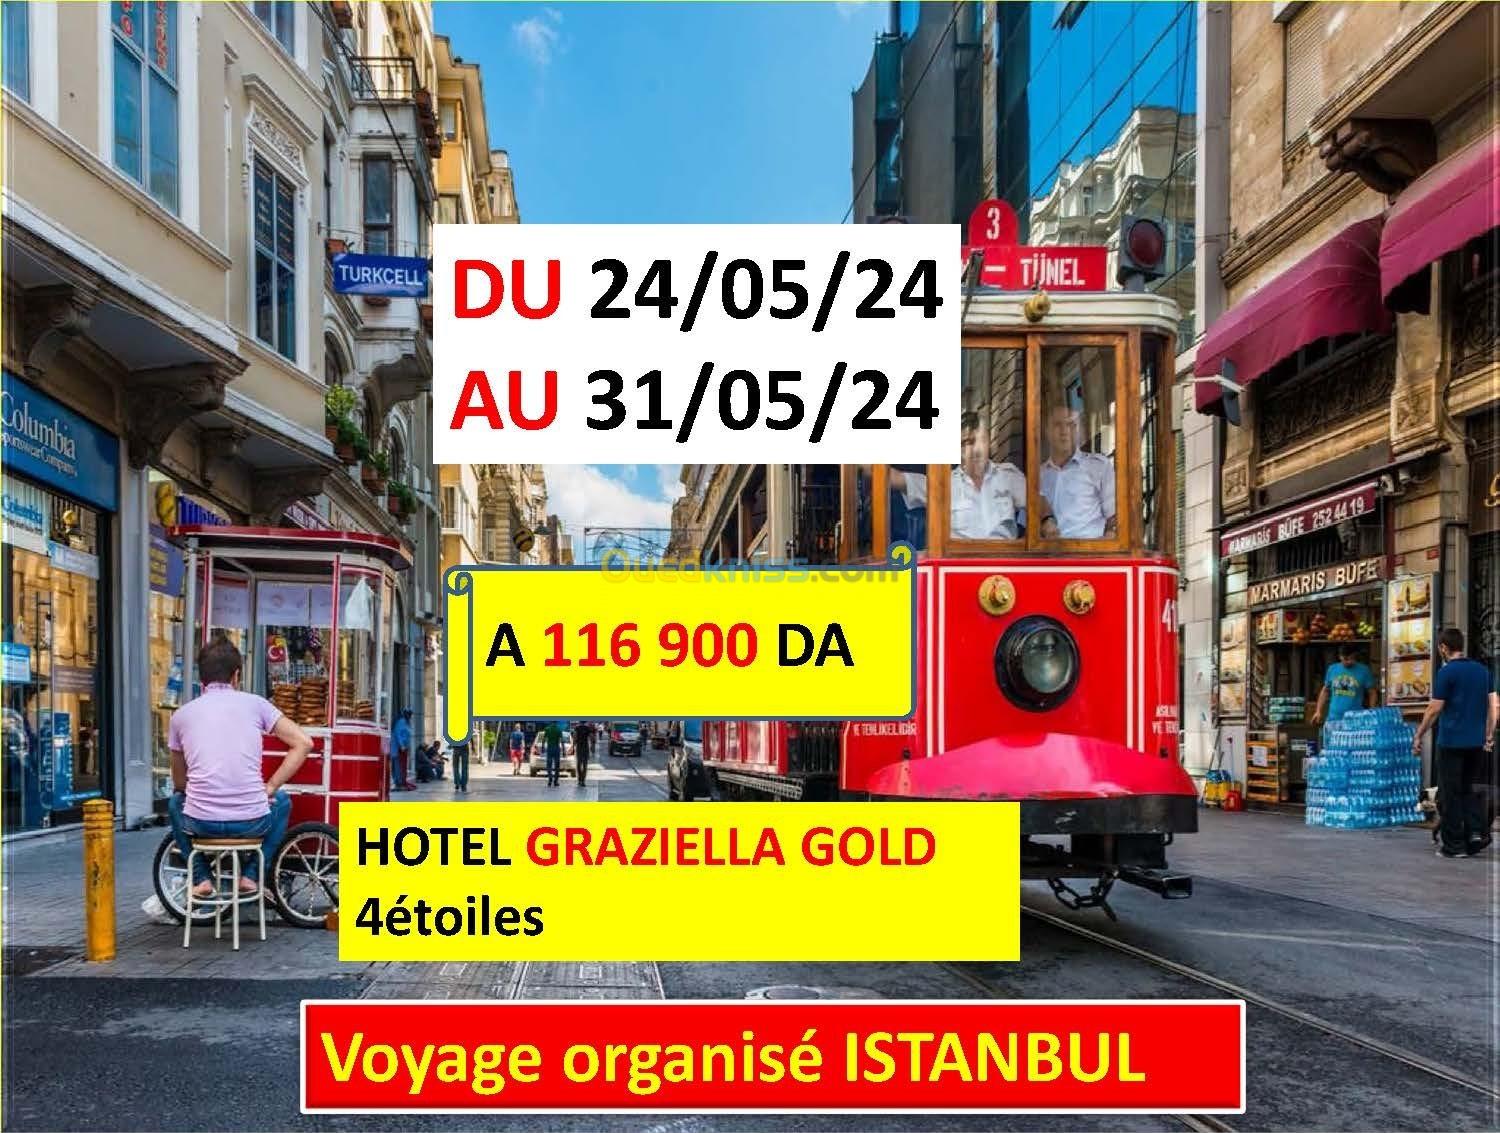 Voyage organise ISTANBUL mois mai pour 8 jours et 7 nuits 